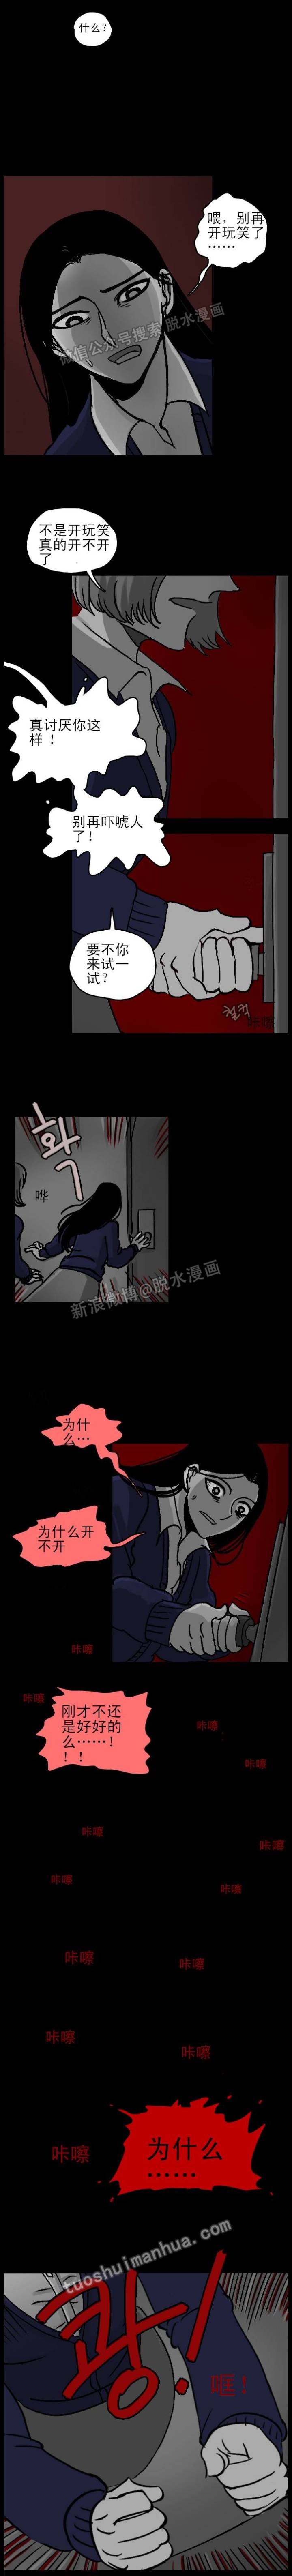 韩国漫画《耳机》-黑白漫话